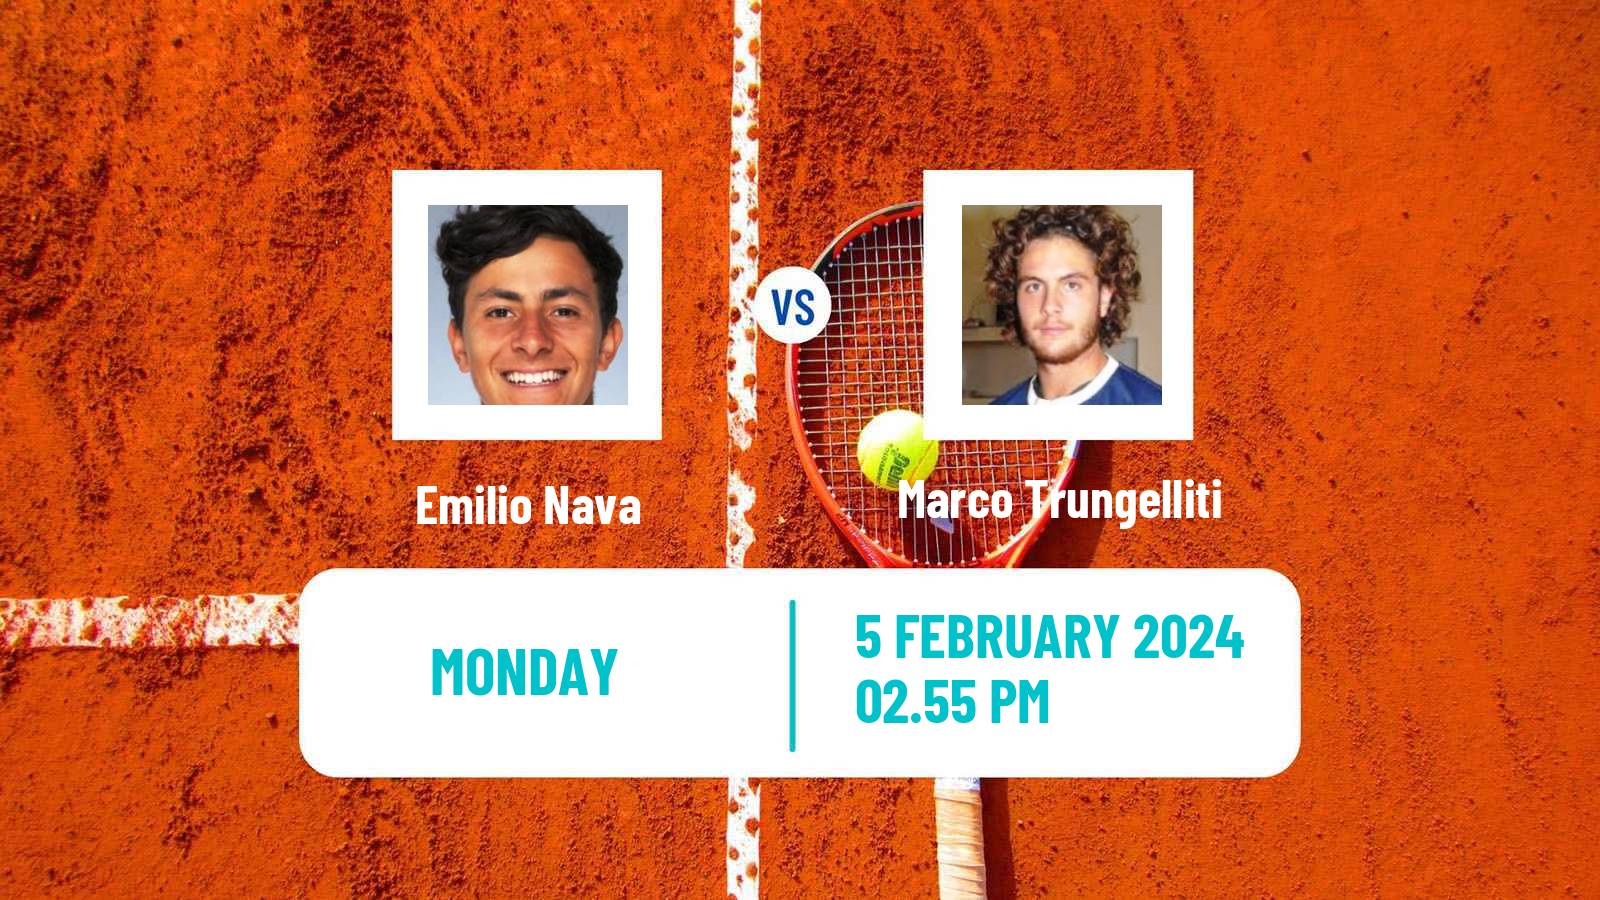 Tennis ATP Dallas Emilio Nava - Marco Trungelliti